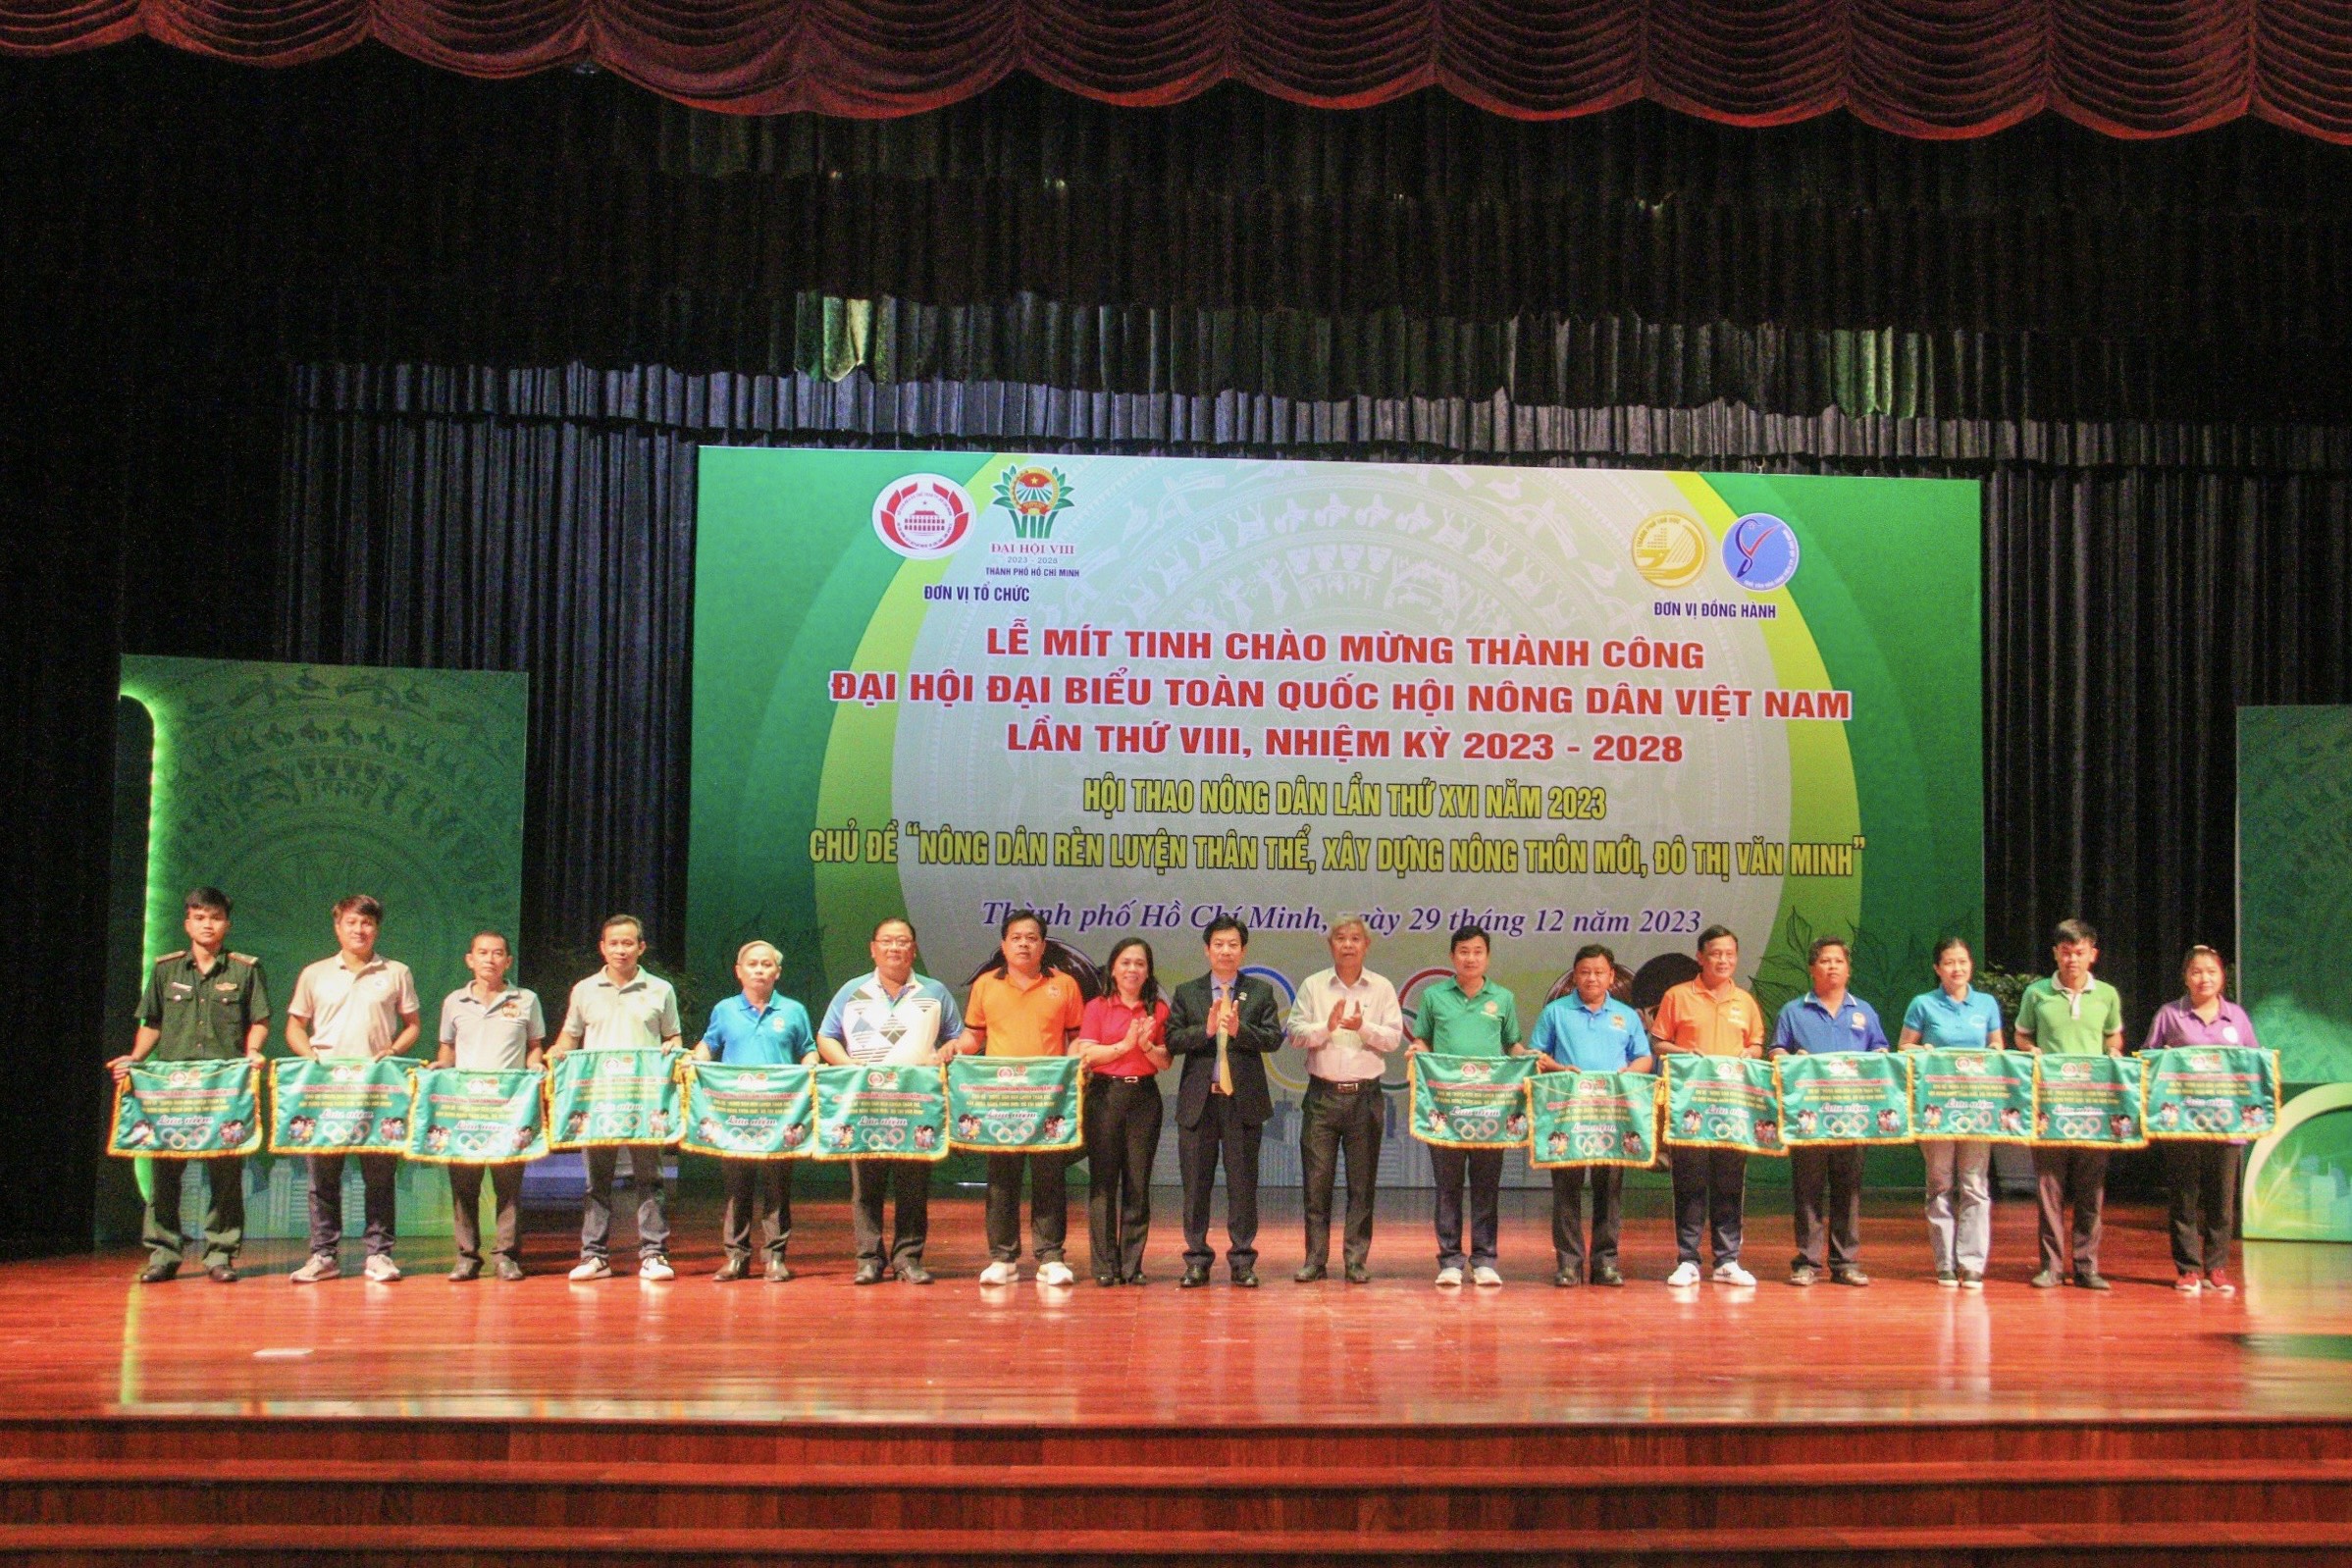 Hội Nông dân TP.HCM chào mừng thành công Đại hội Đại biểu toàn quốc Hội Nông dân Việt Nam lần thứ VIII, nhiệm kỳ 2023 – 2028